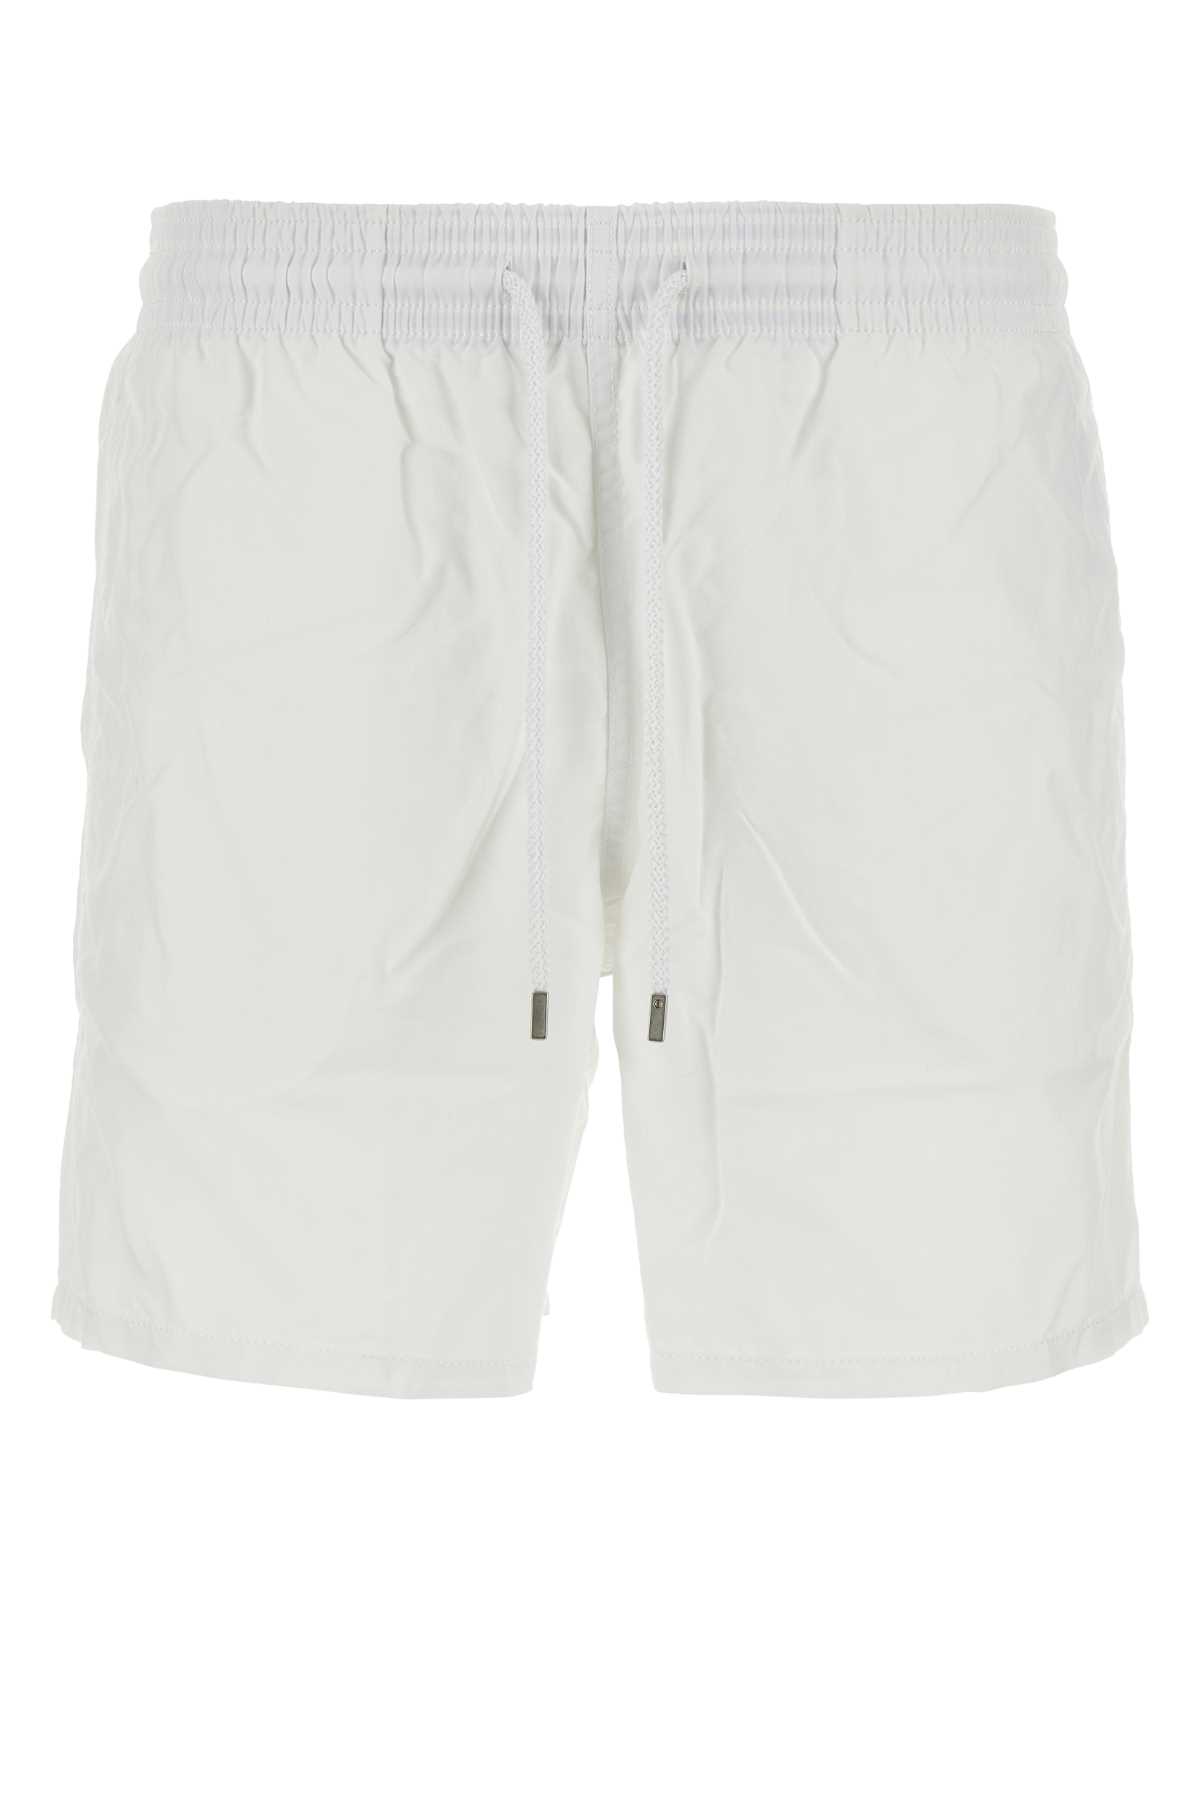 White Nylon Swimming Shorts